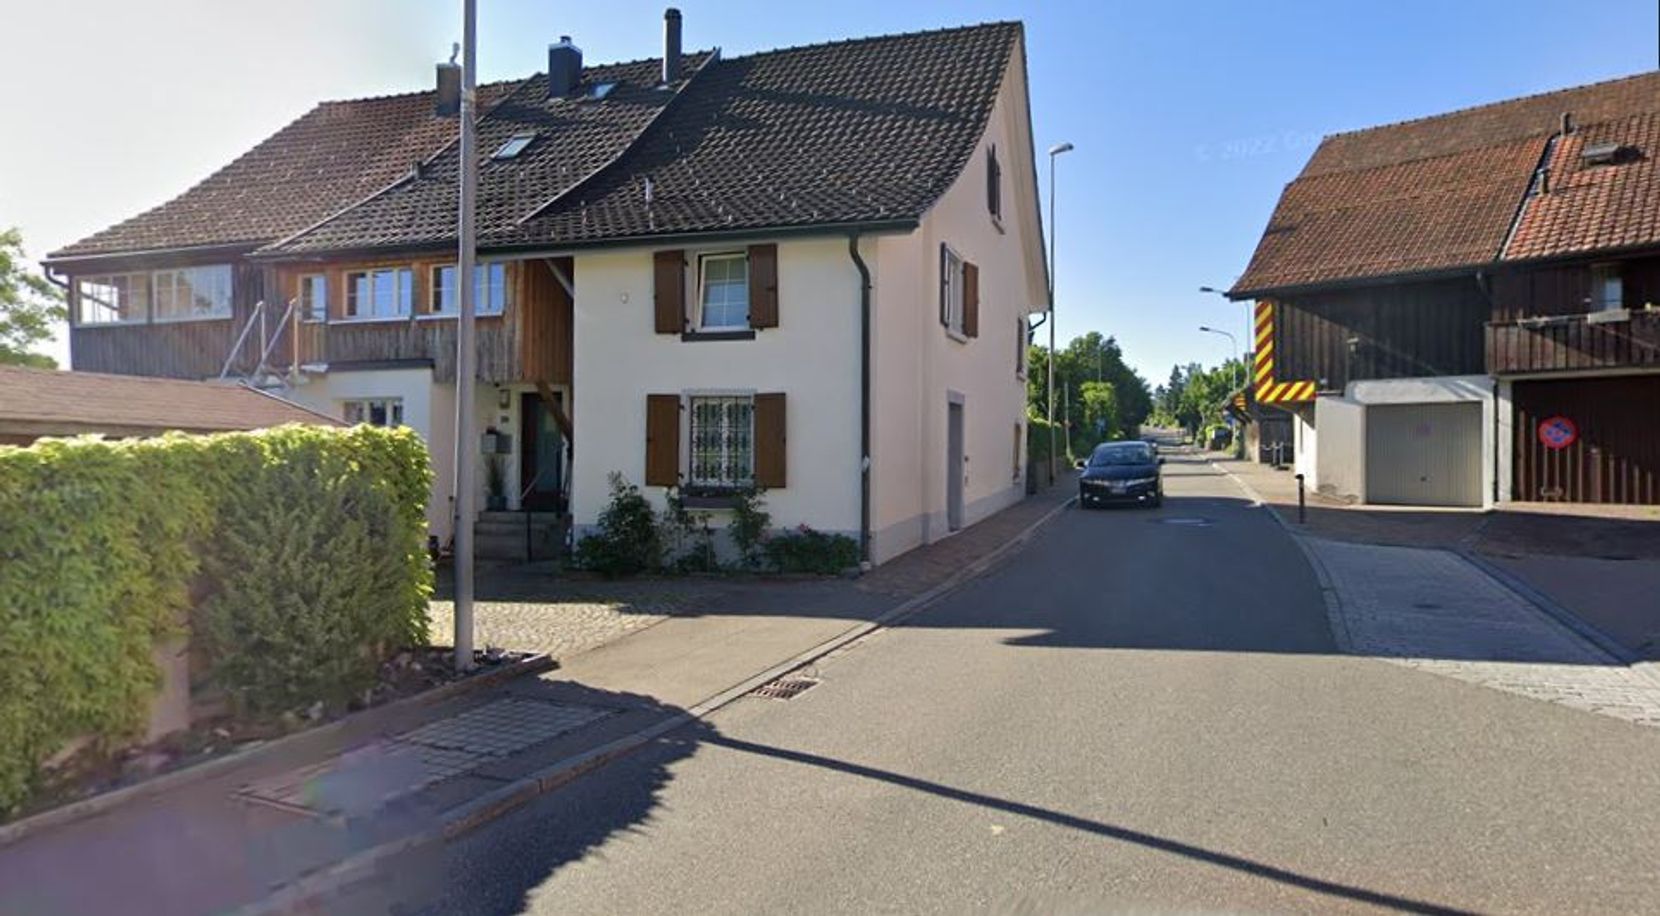 Bild einer engen Strasse zwischen zwei Häusern.